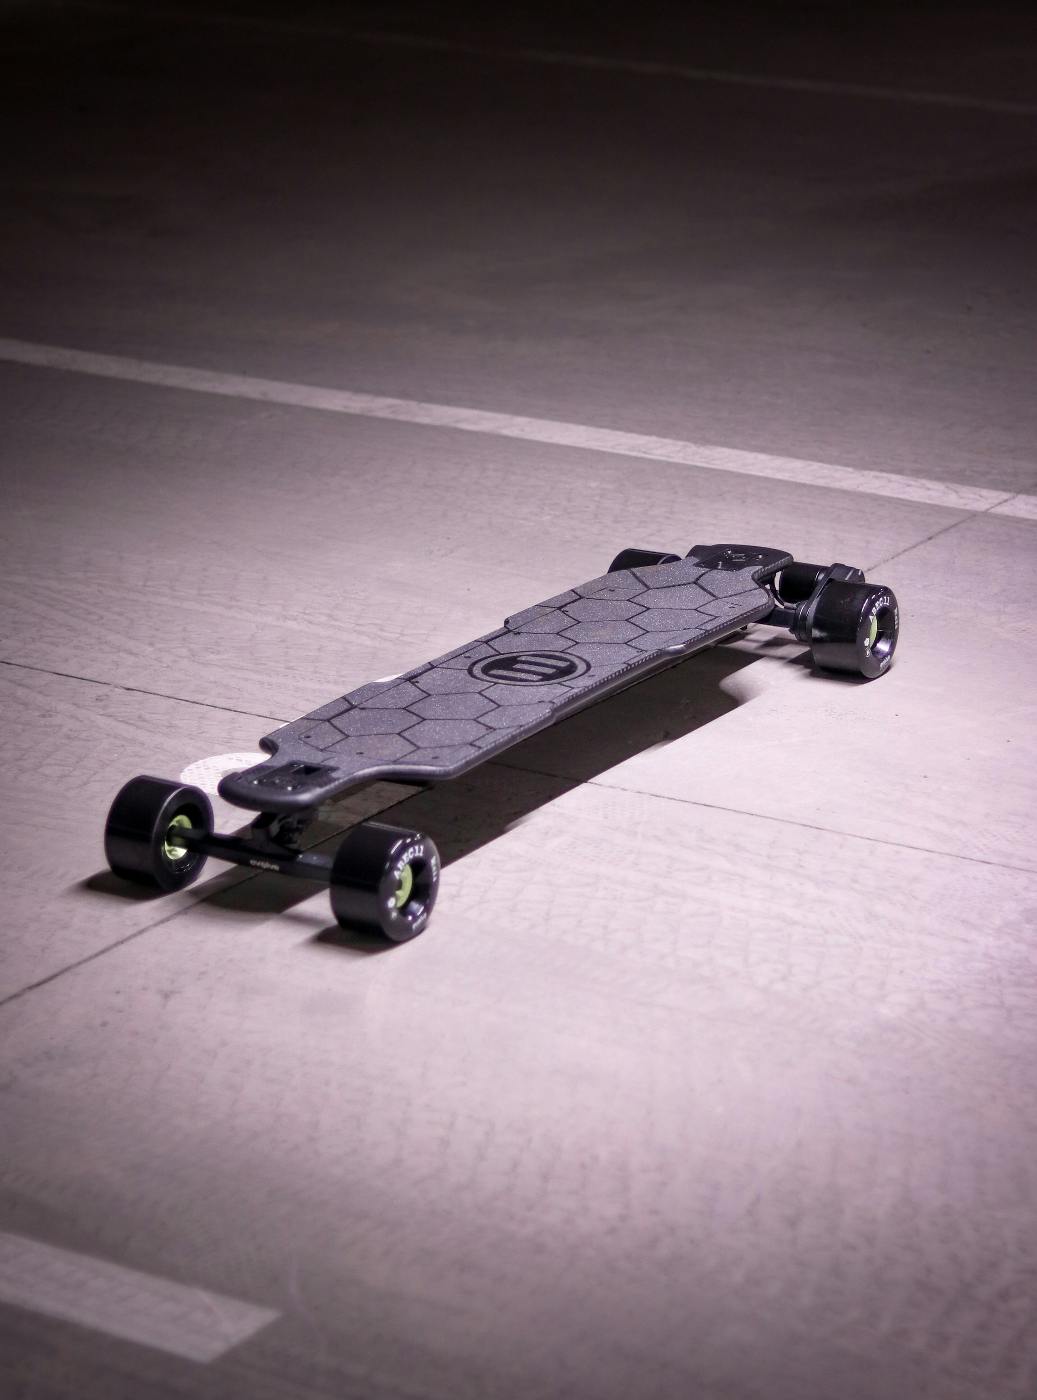 A modern high-tech skateboard